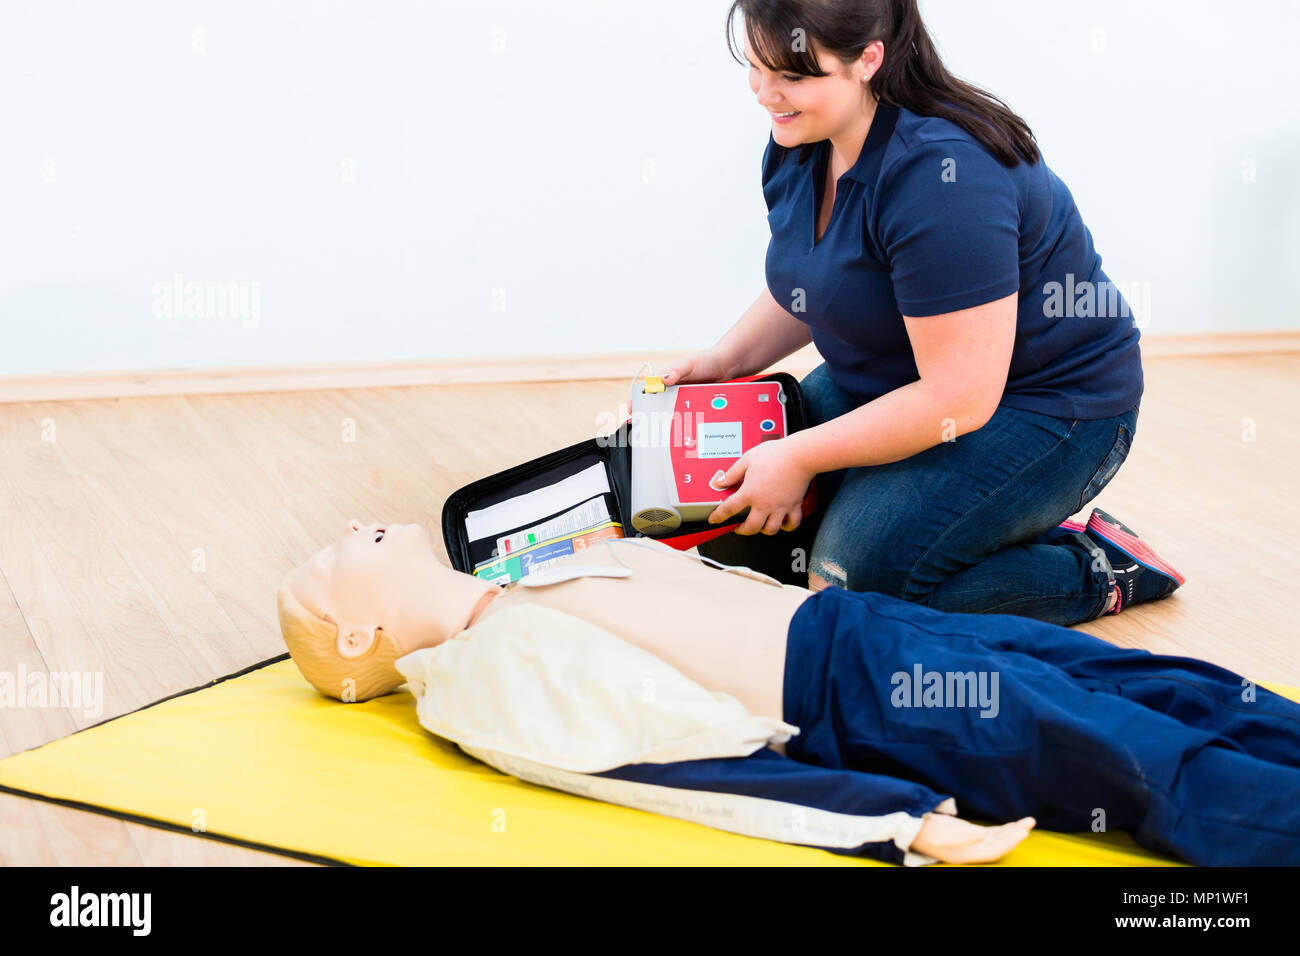 Ersthelfer Ausbildung lernen Wiederbelebung mit Defibrillator Stockfoto